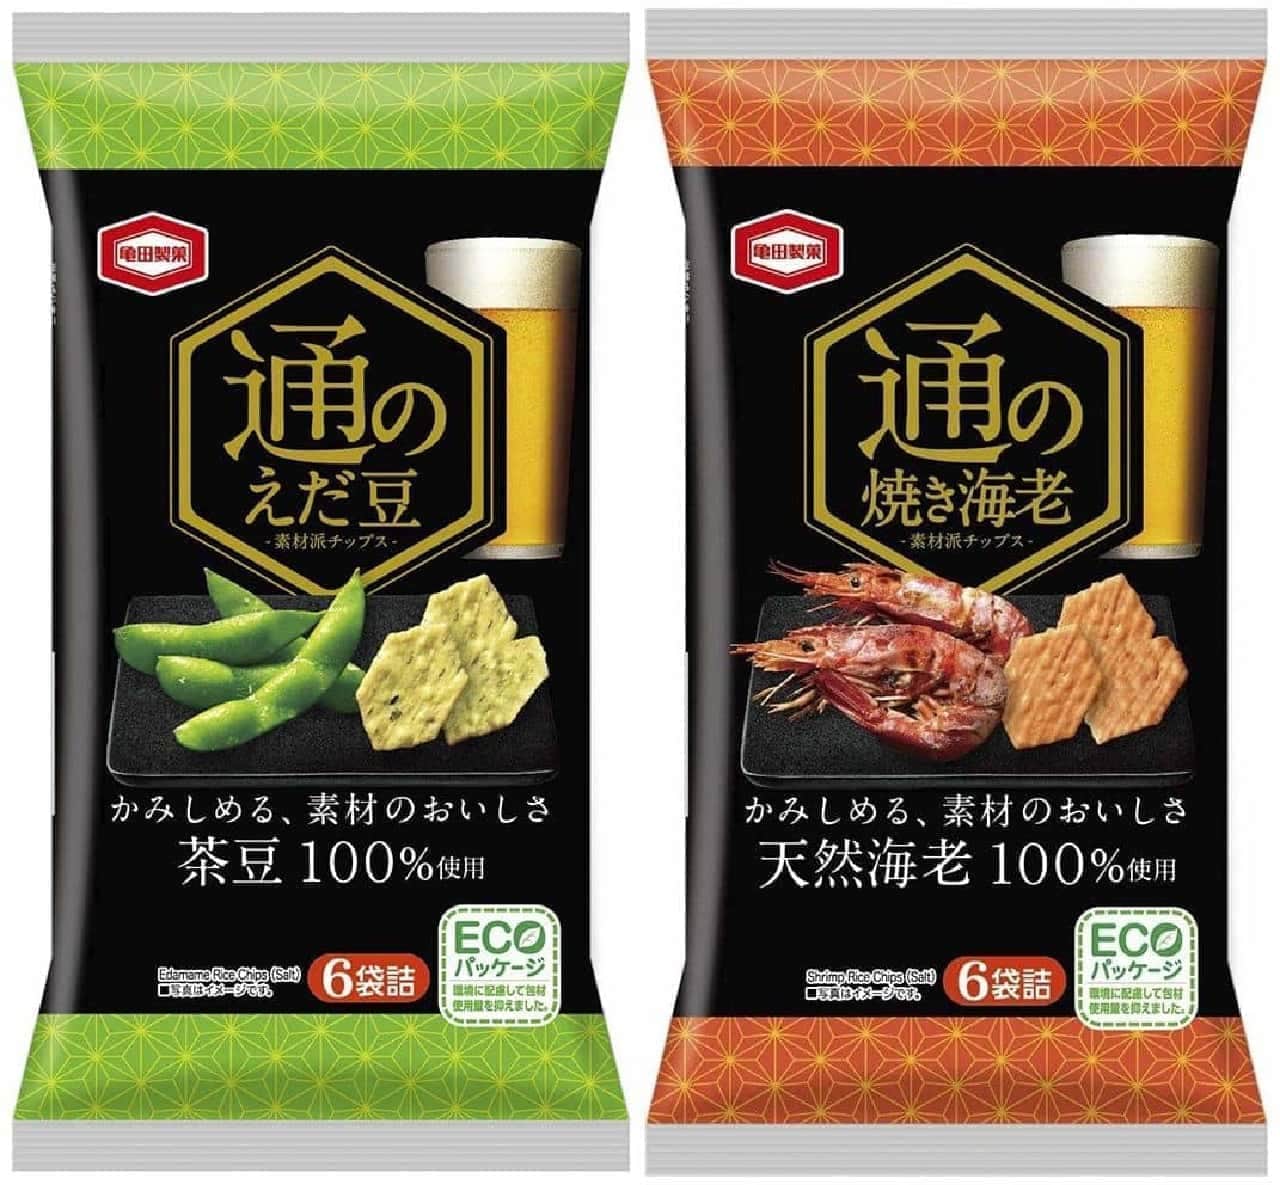 Kameda Seika "Tsu no Eda Beans" and "Tsu no Yaki Shrimp"